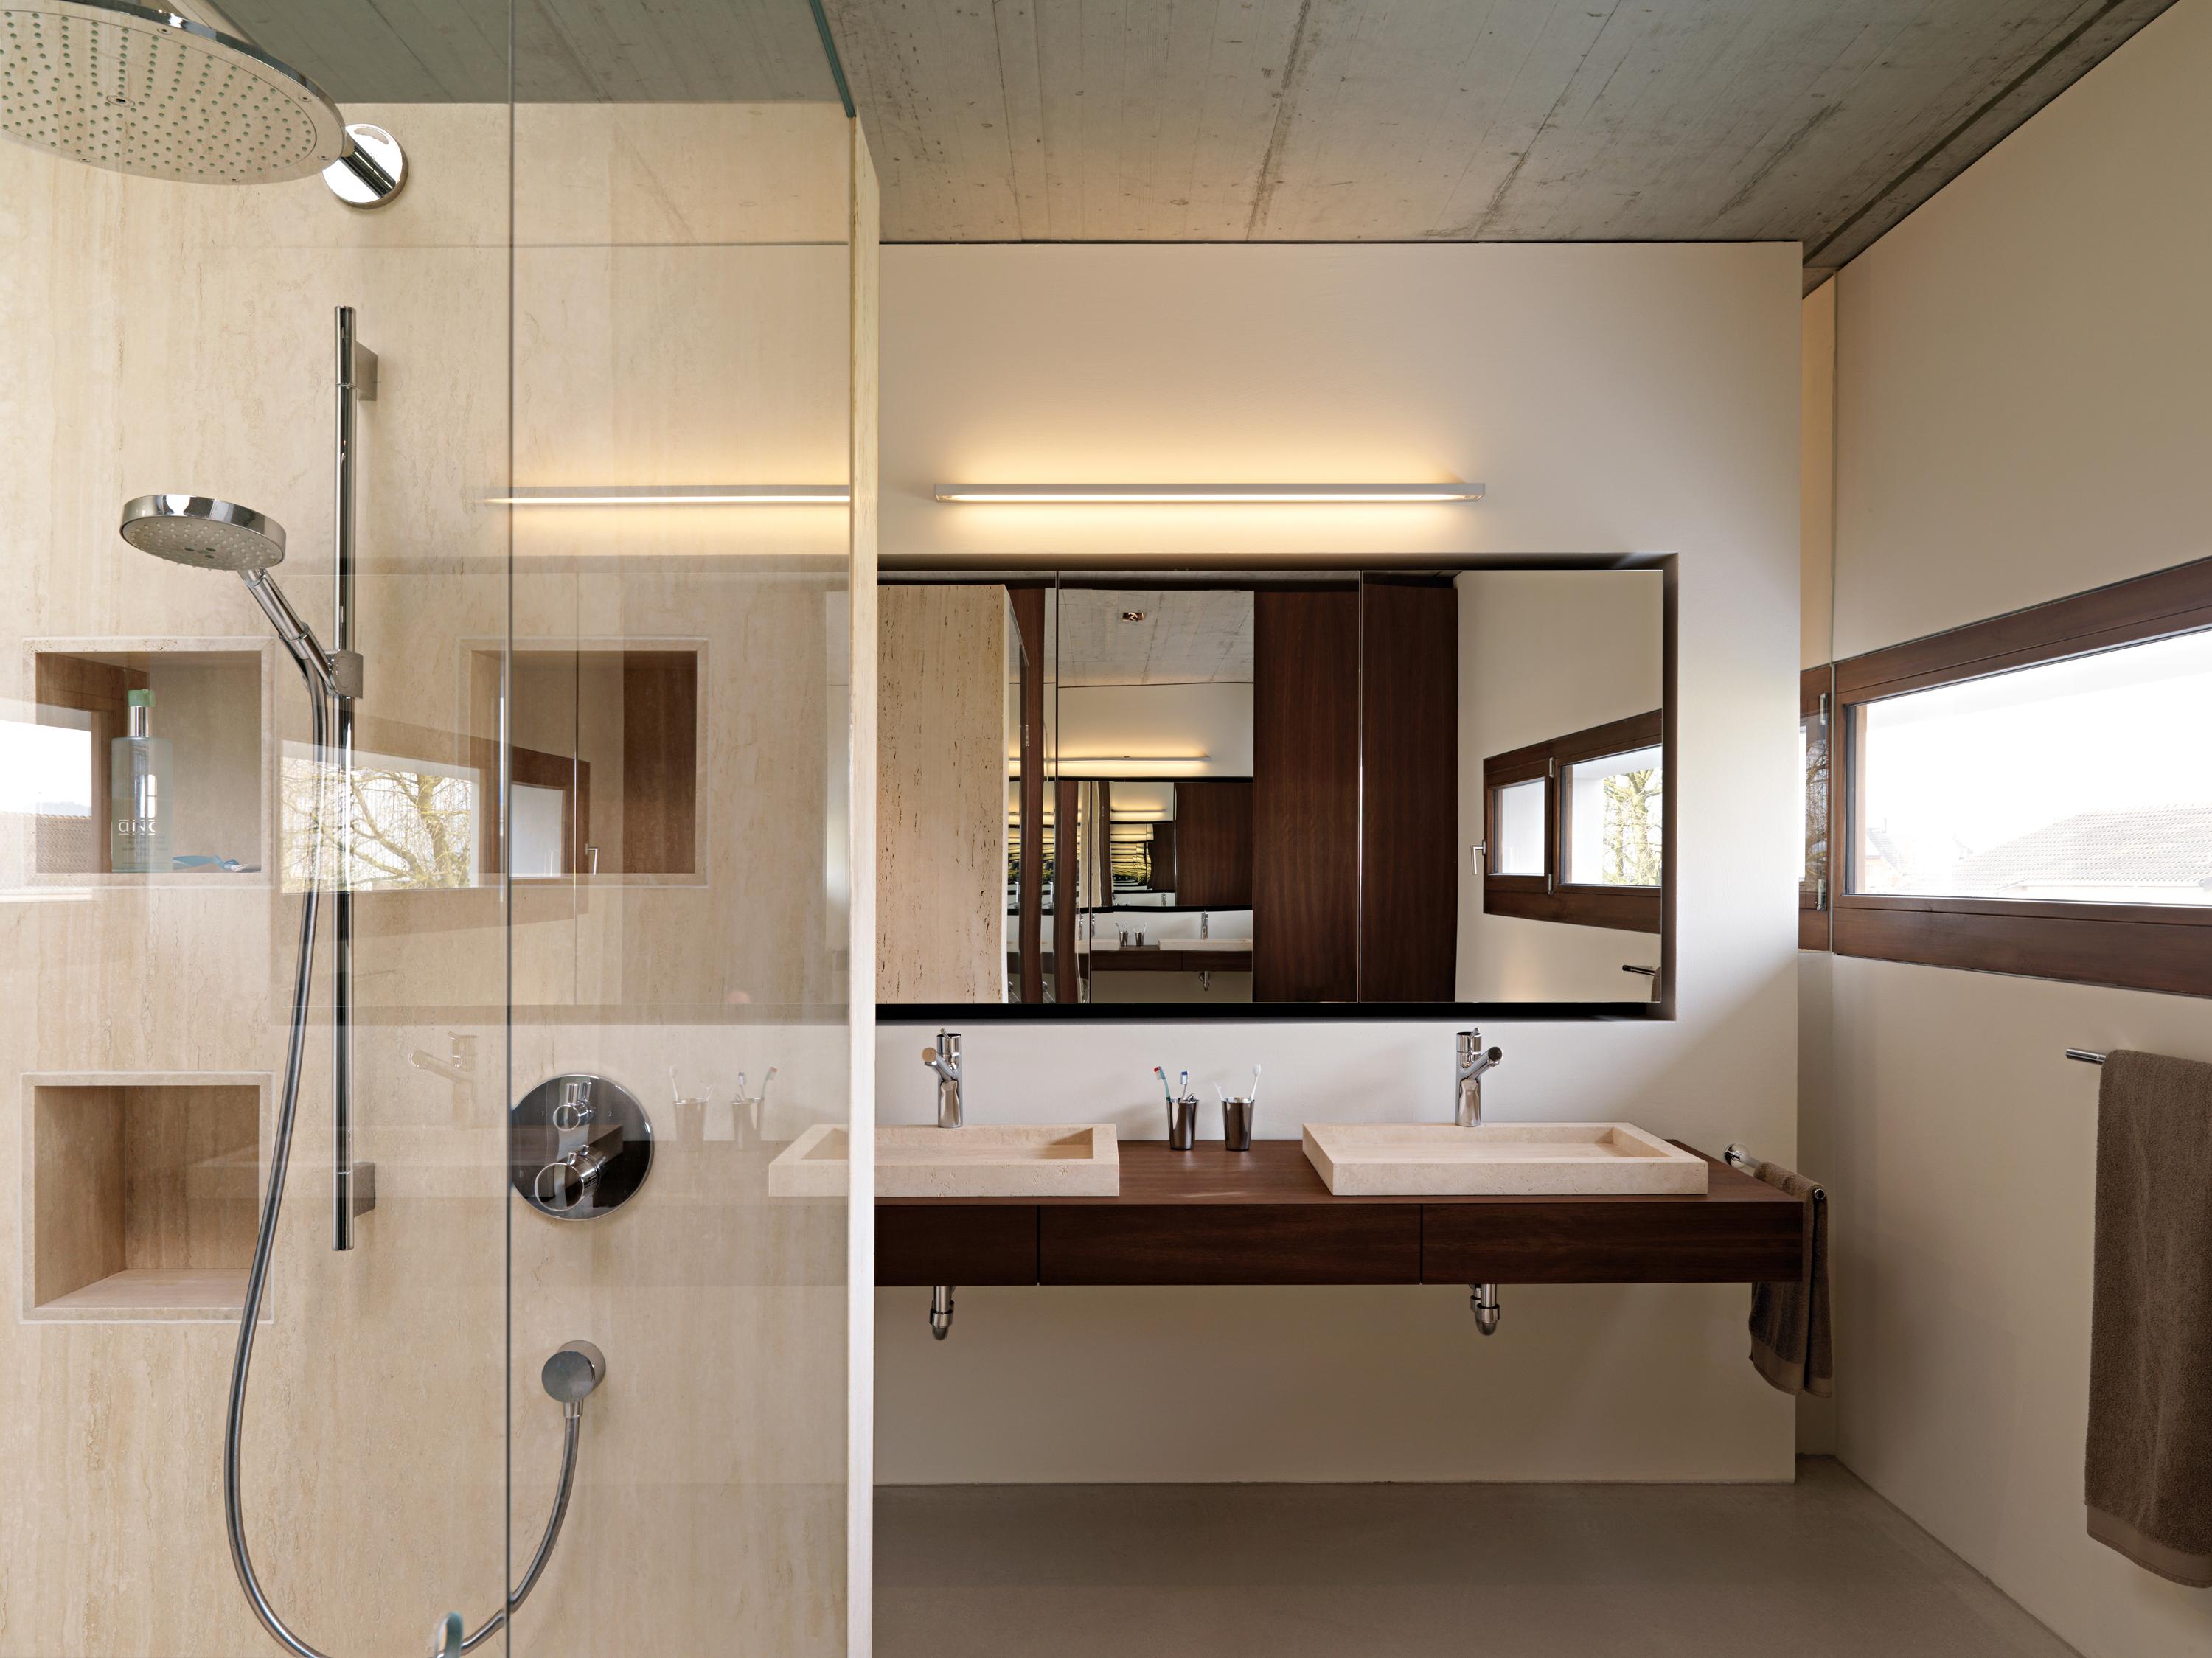 Waschtisch, Fensterrahmen und Tür in Braun #dusche #waschtisch #wandspiegel #wandleuchte #holzwaschtisch ©Leicht Küchen